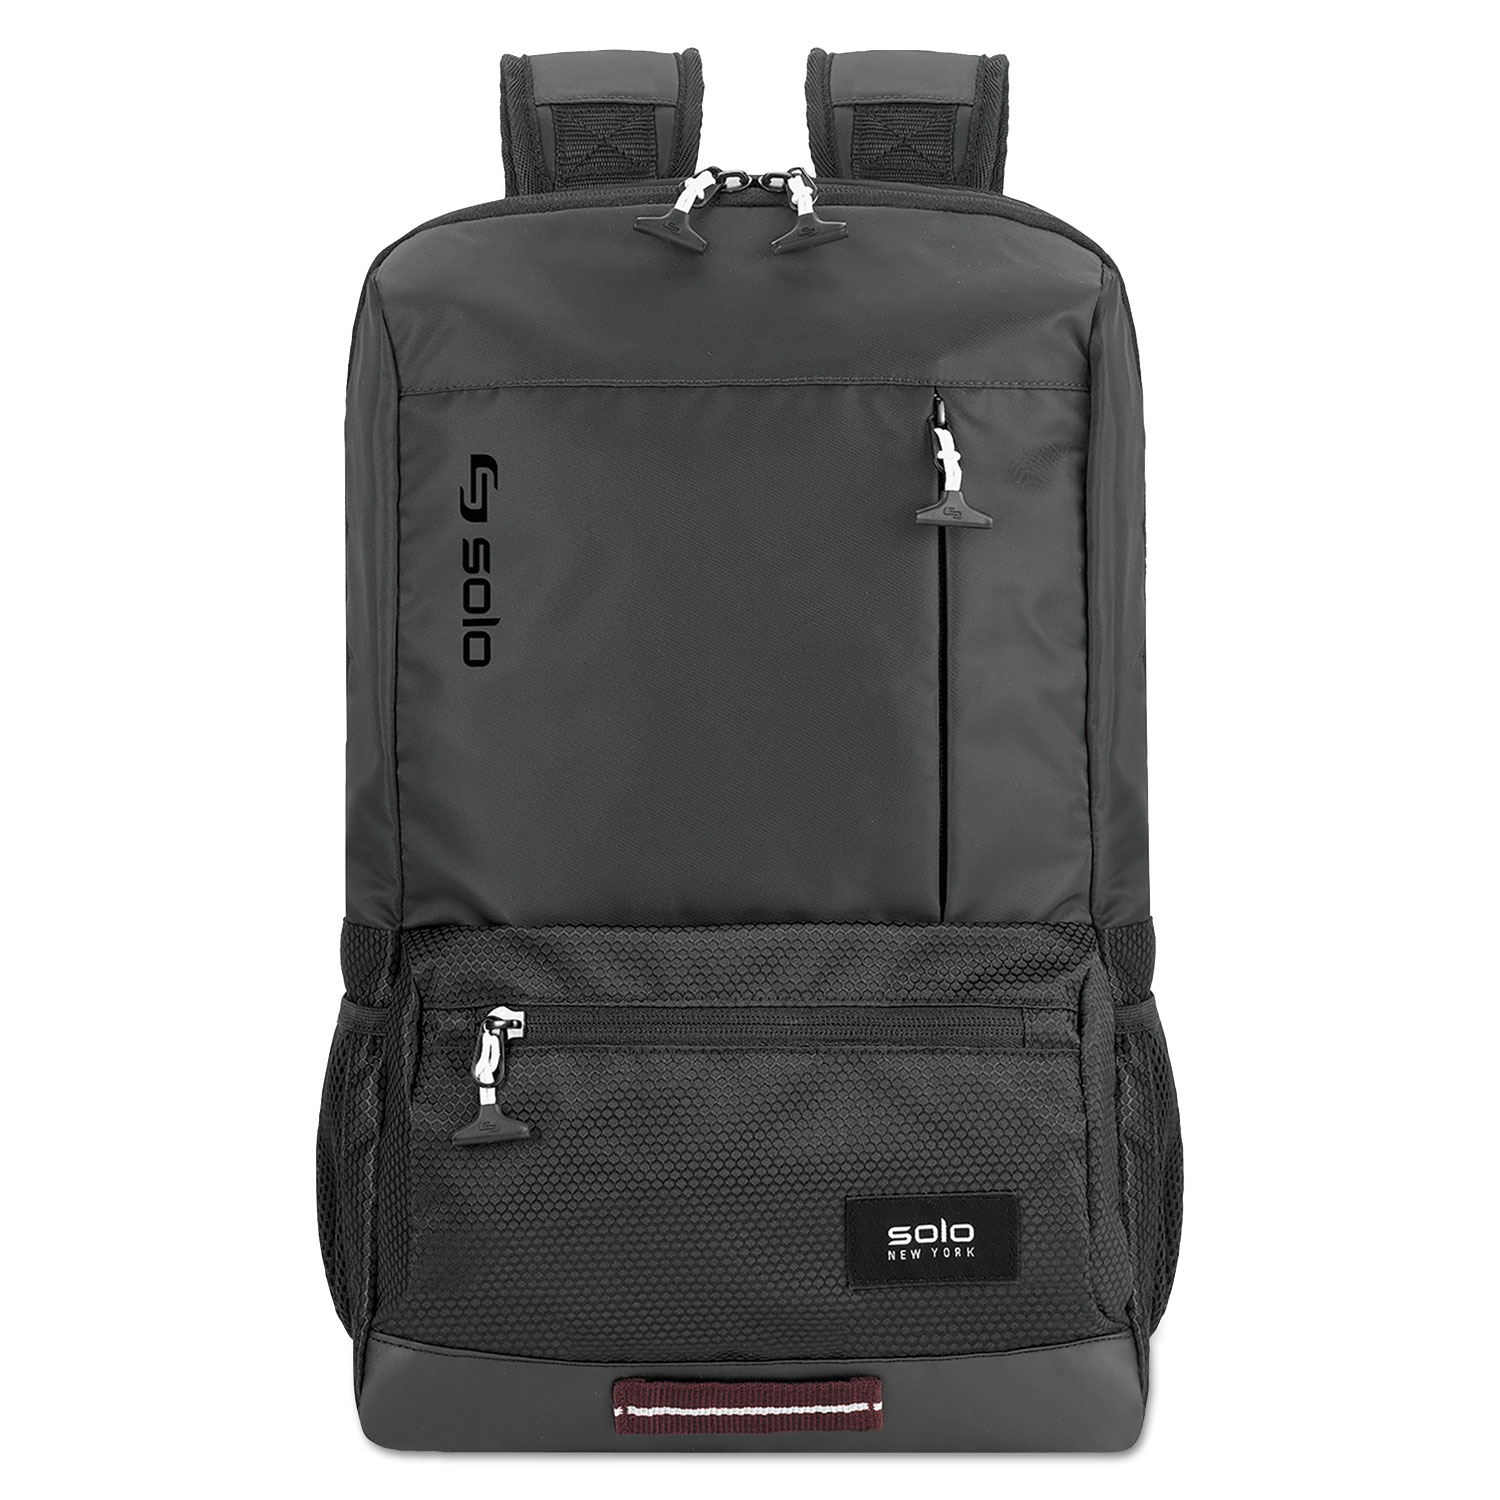  Solo VAR701-4 Draft Backpack, 6.25 x 18.12 x 18.12, Nylon, Black (USLVAR7014) 